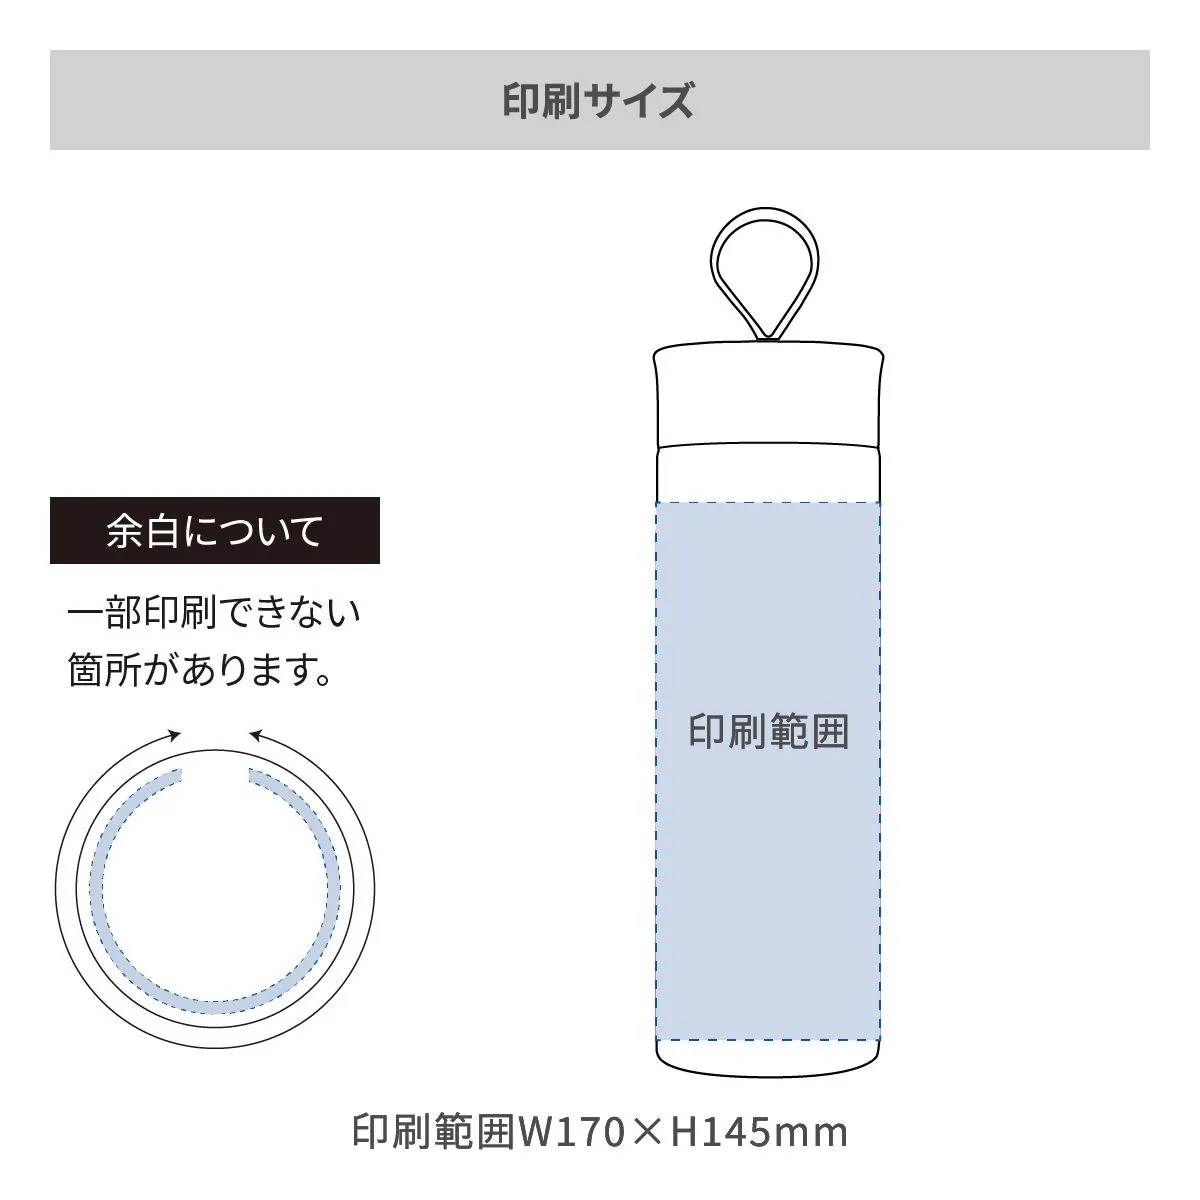 リーチウィル ellipsステンレスマグボトル 400ml【オリジナルステンレスボトル / 回転シルク印刷】 画像2